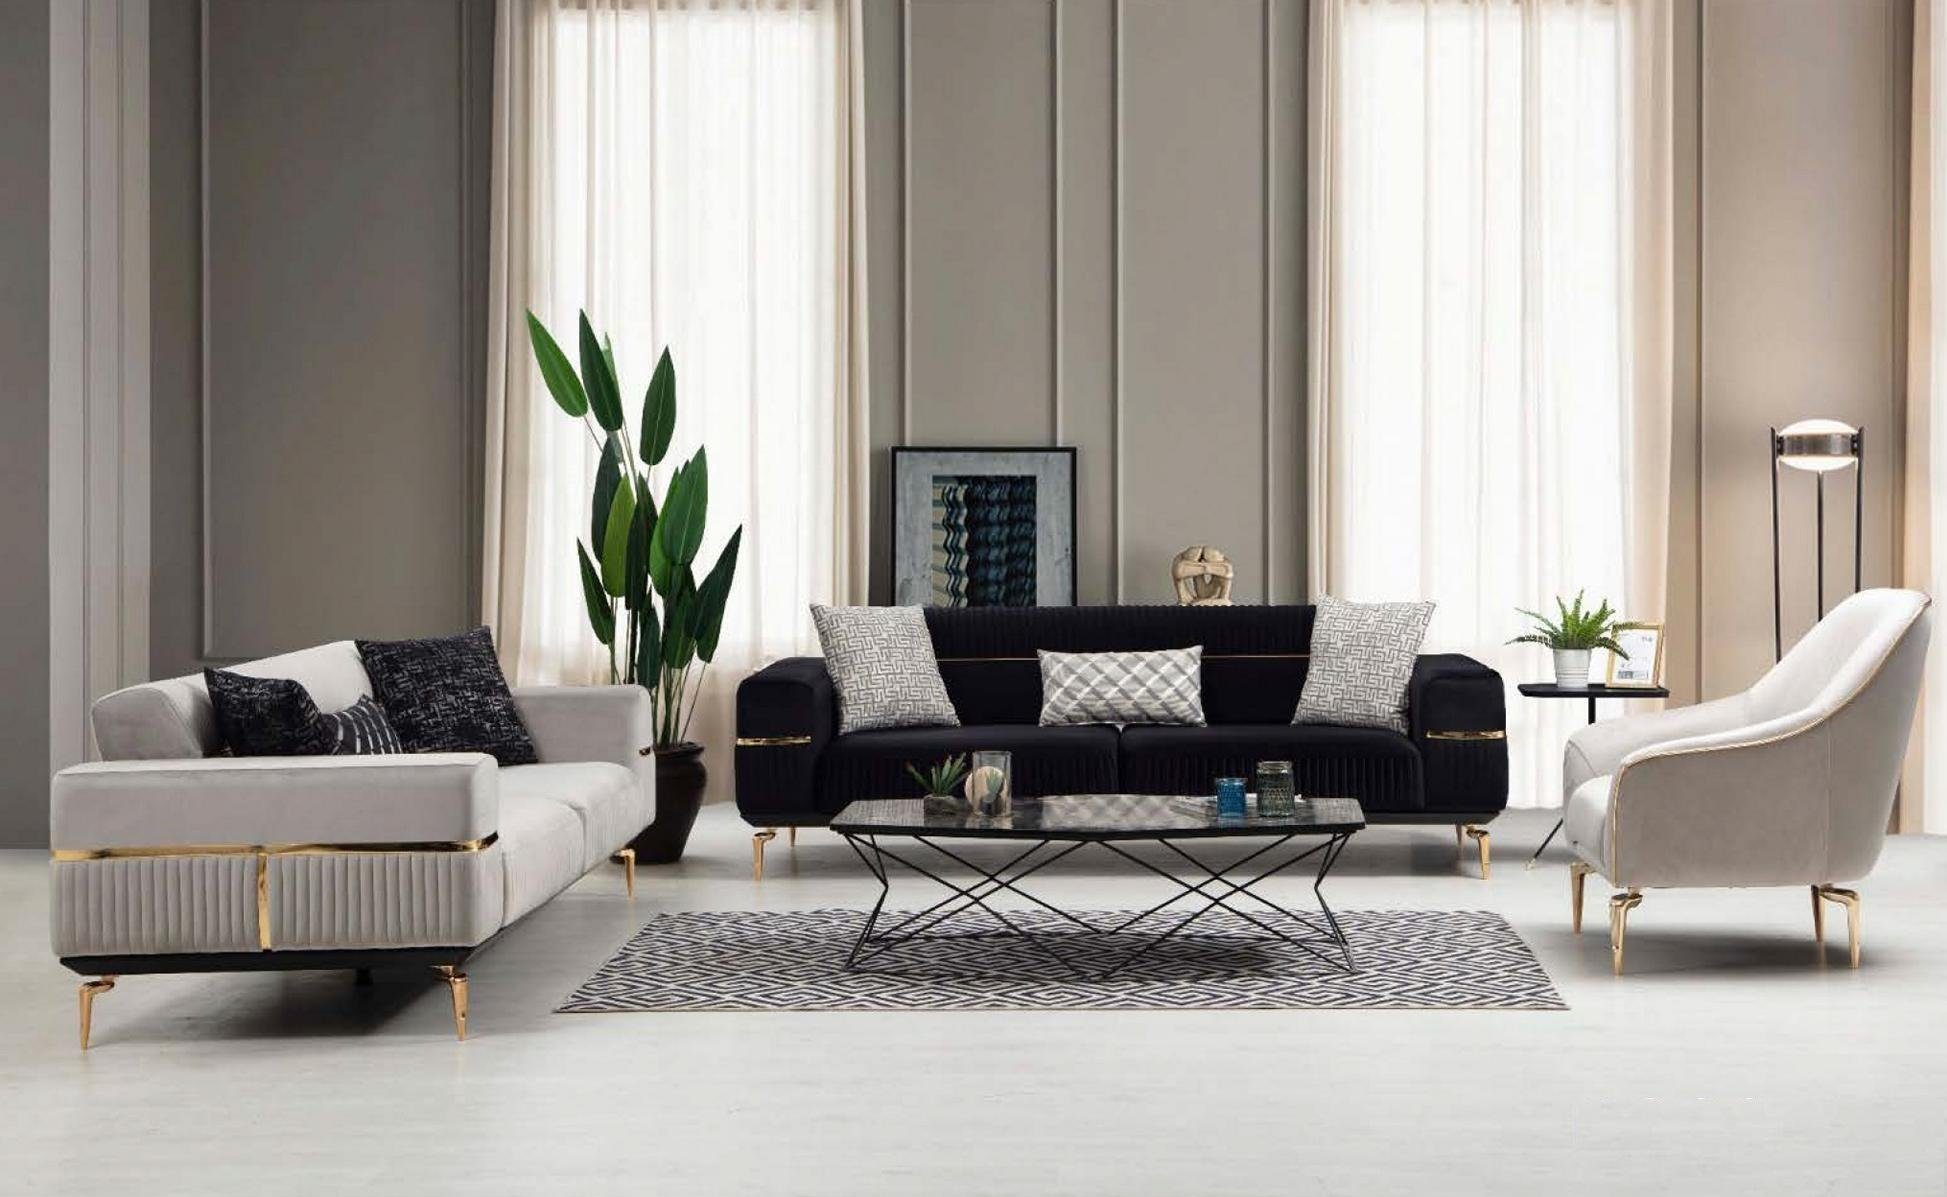 Couch Europe moderne in Edelstahl, Sofa Neu Möbel JVmoebel Made Dreisitzer Weißer Luxus